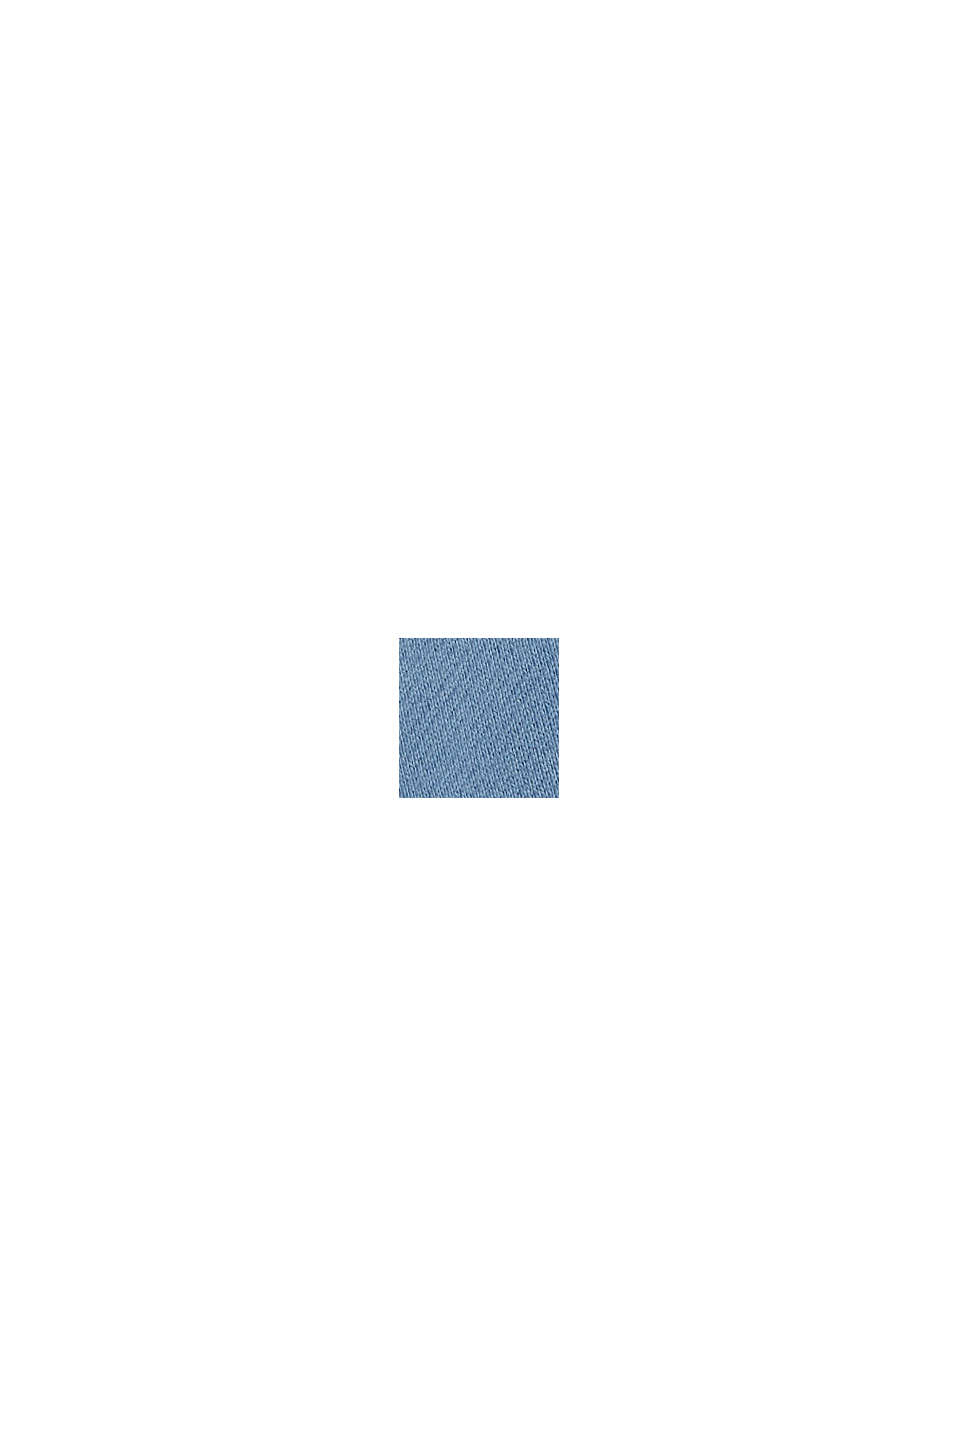 Sudadera con capucha de felpa en algodón sostenible, BLUE, swatch